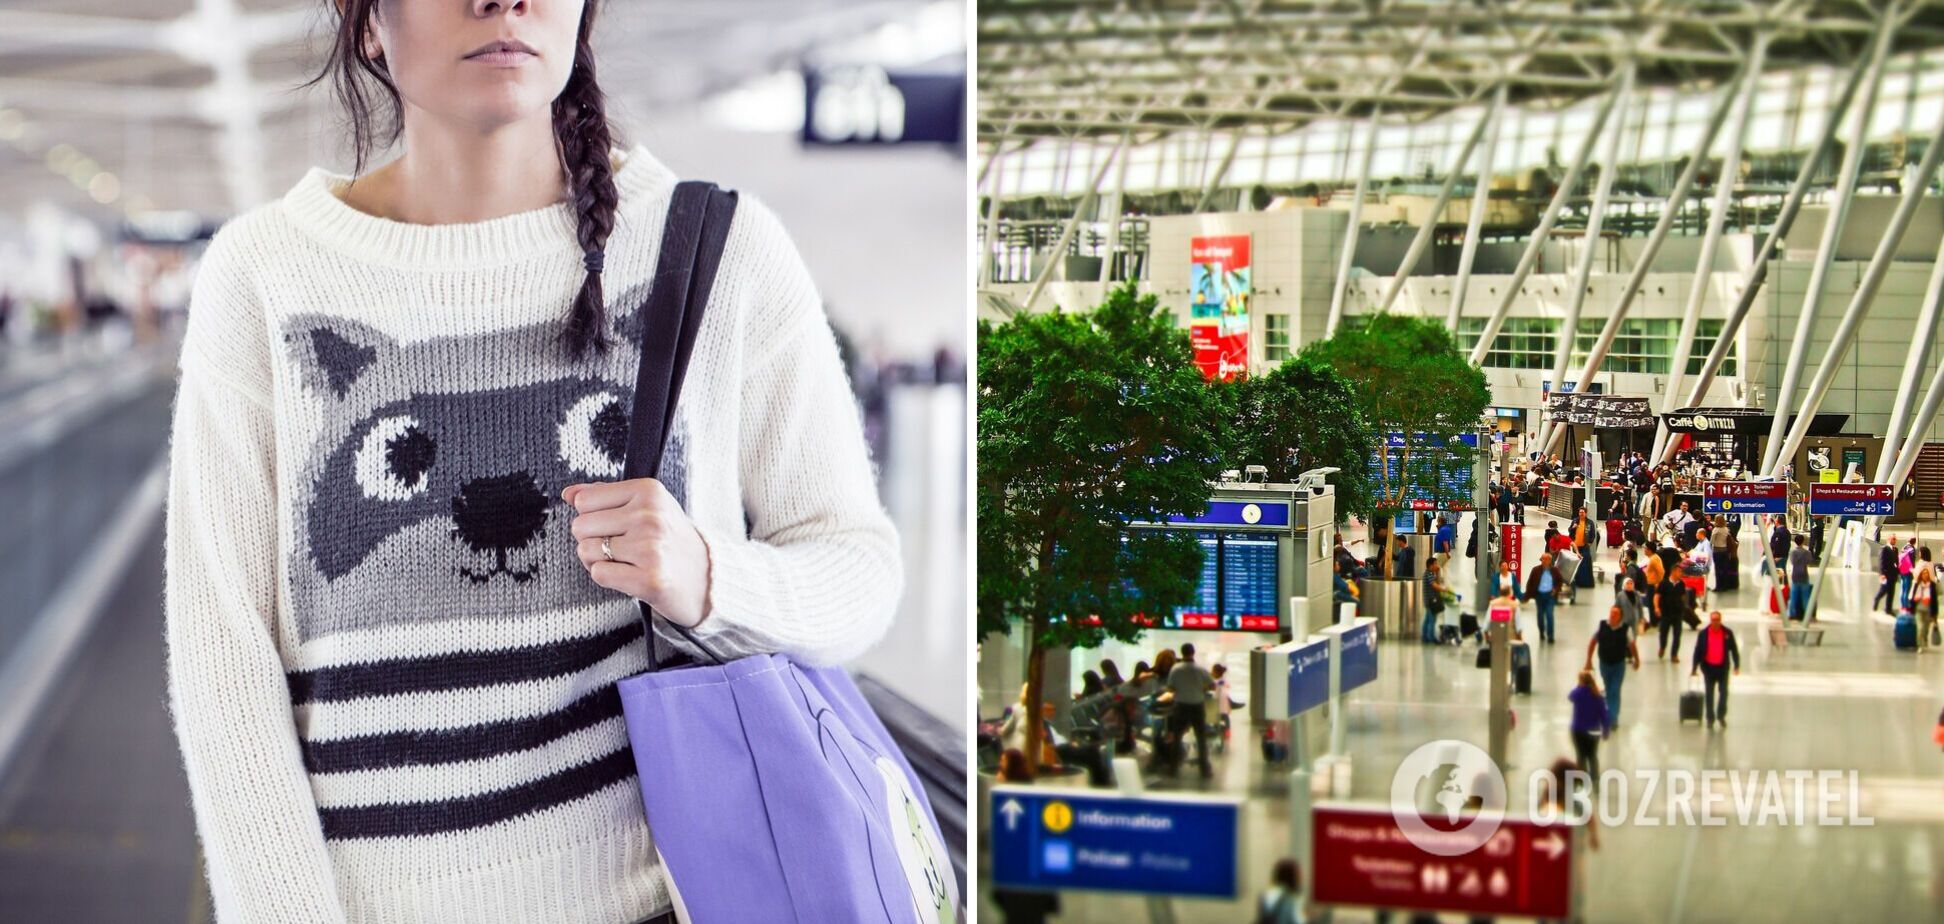 10 частых ошибок туристов в аэропорту, которые стоят денег